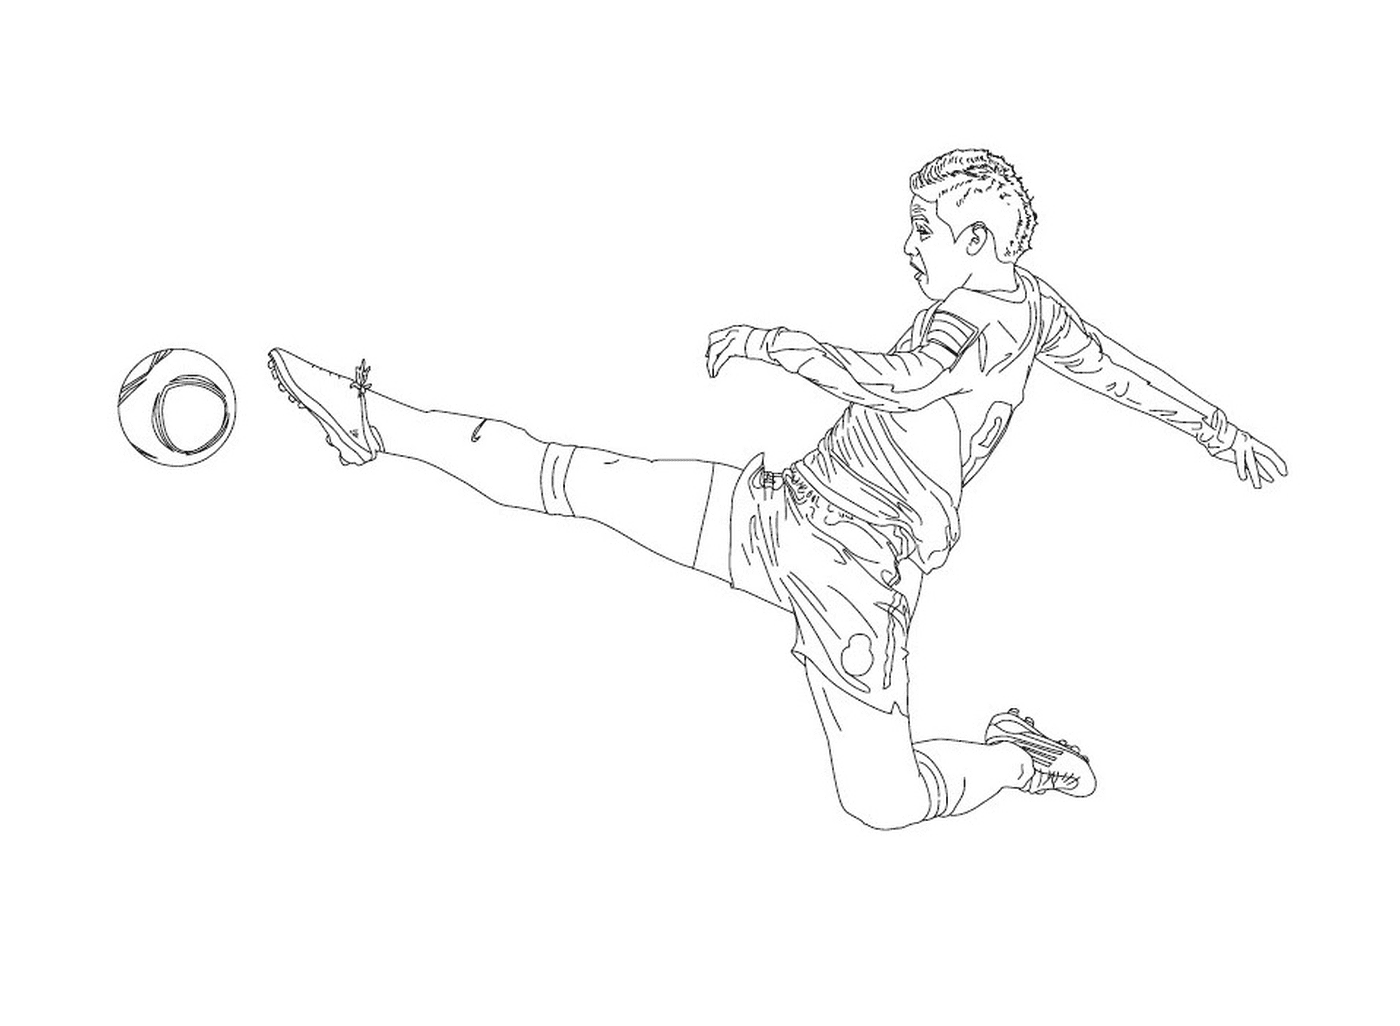  Un garçon donnant un coup de pied dans un ballon de football